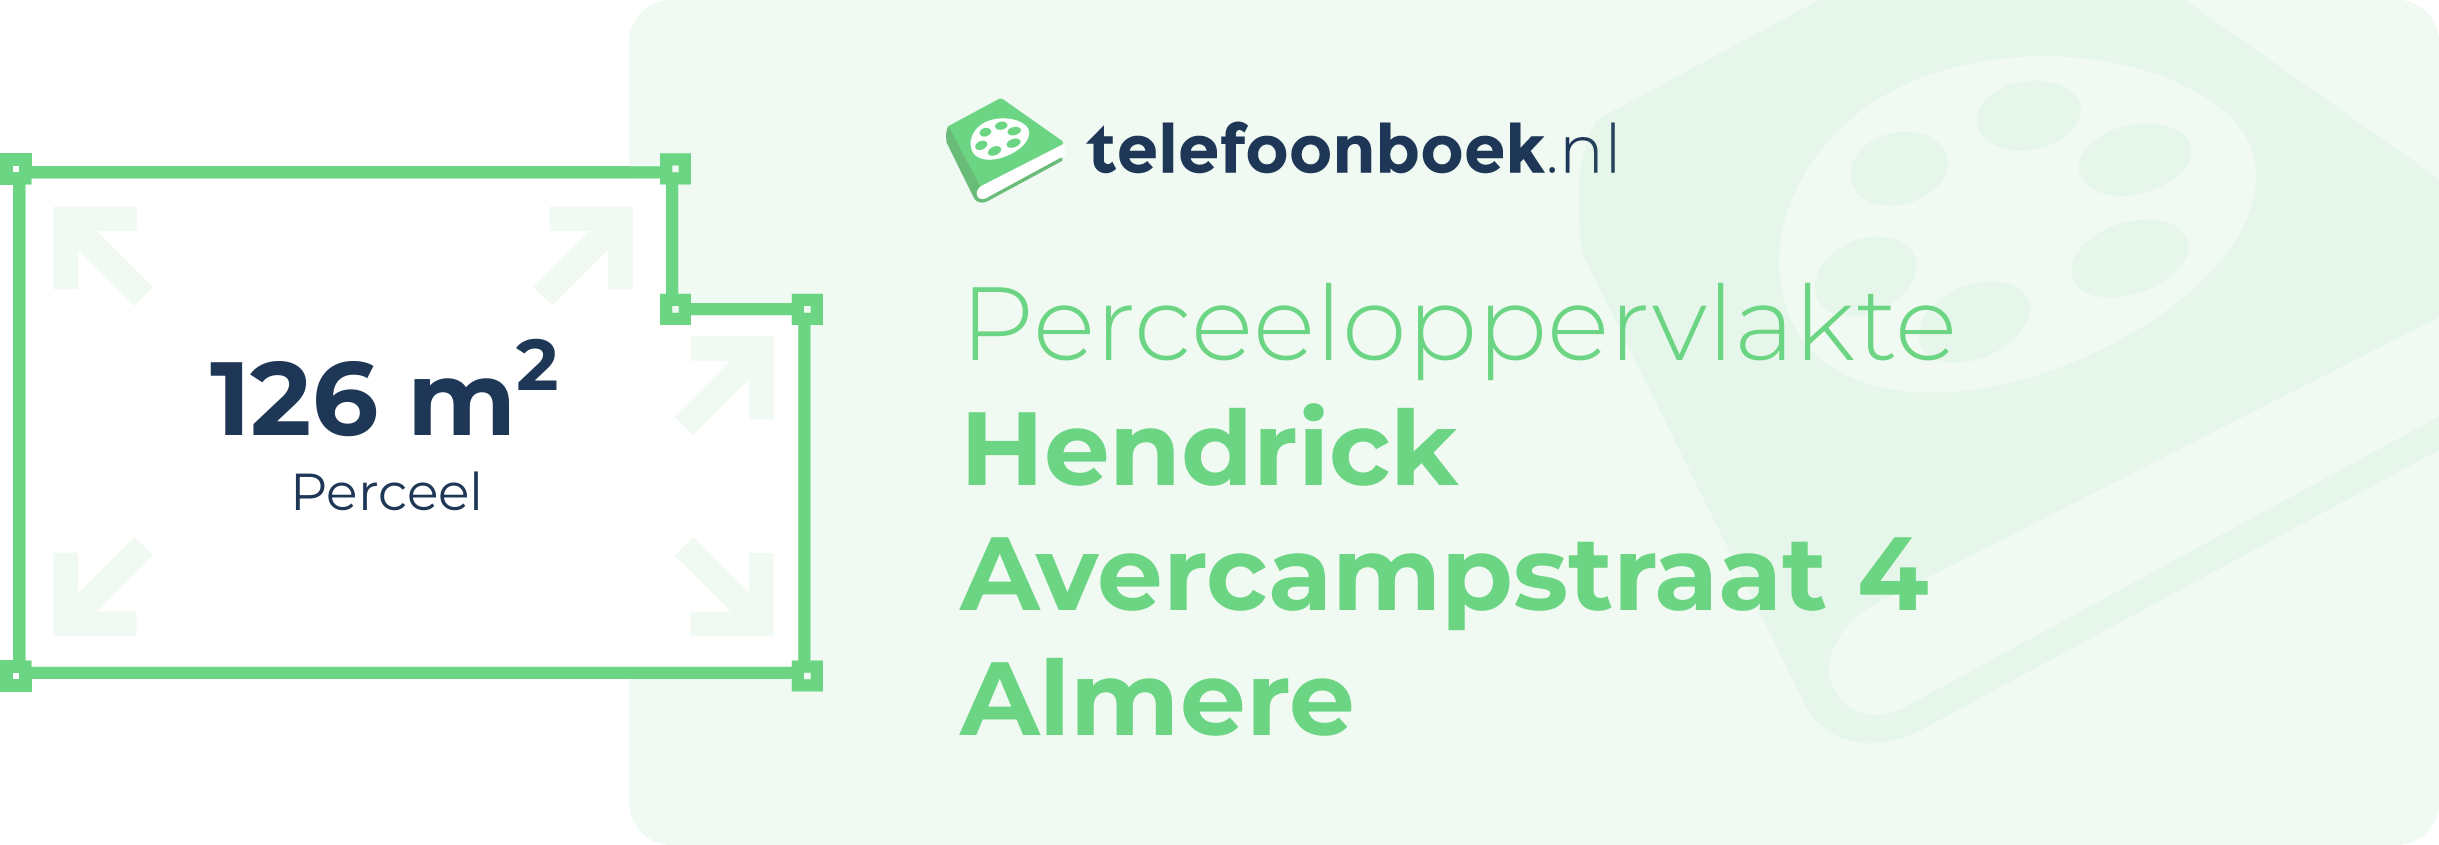 Perceeloppervlakte Hendrick Avercampstraat 4 Almere